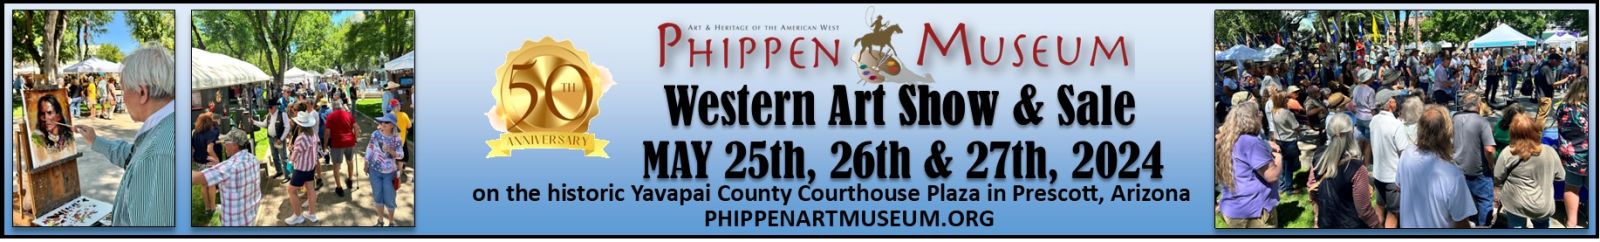 April 26-May 26 Phippen Art Museum